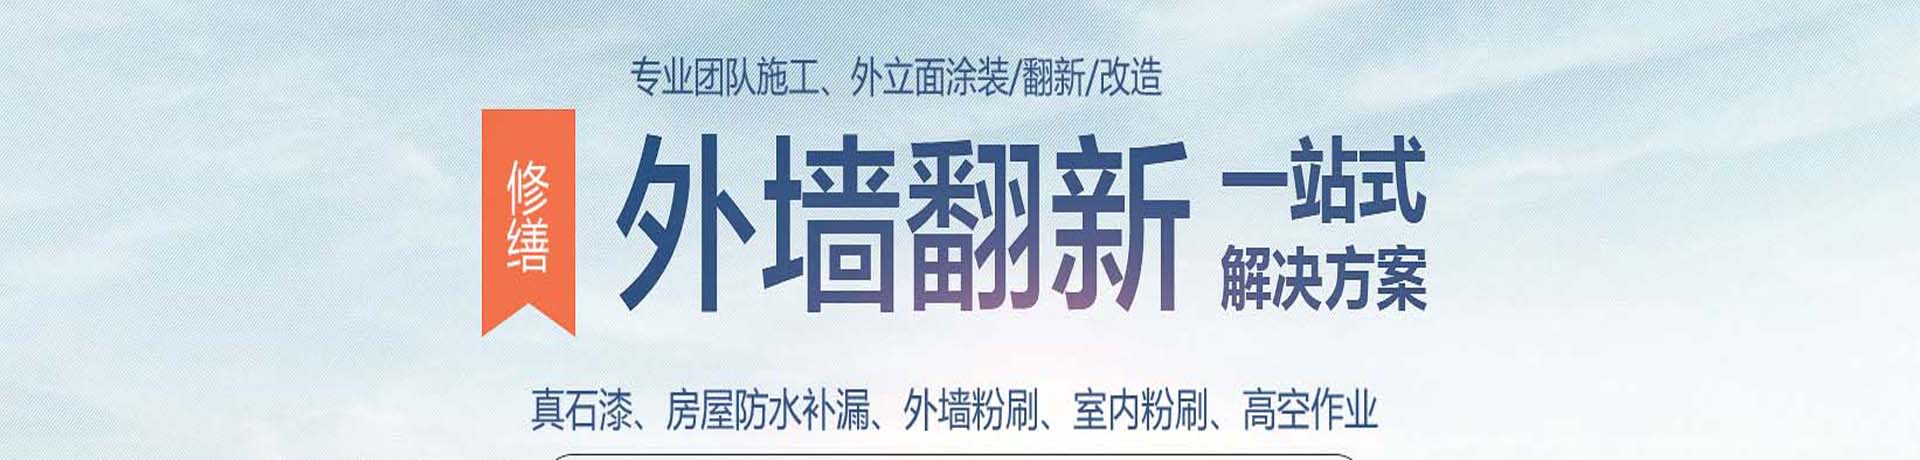 上海外墙高空涂料粉刷,外墙真石漆施工,上海外墙翻新公司,专业的墙面涂刷服务-上海物美环境工程有限公司 - 关于我们